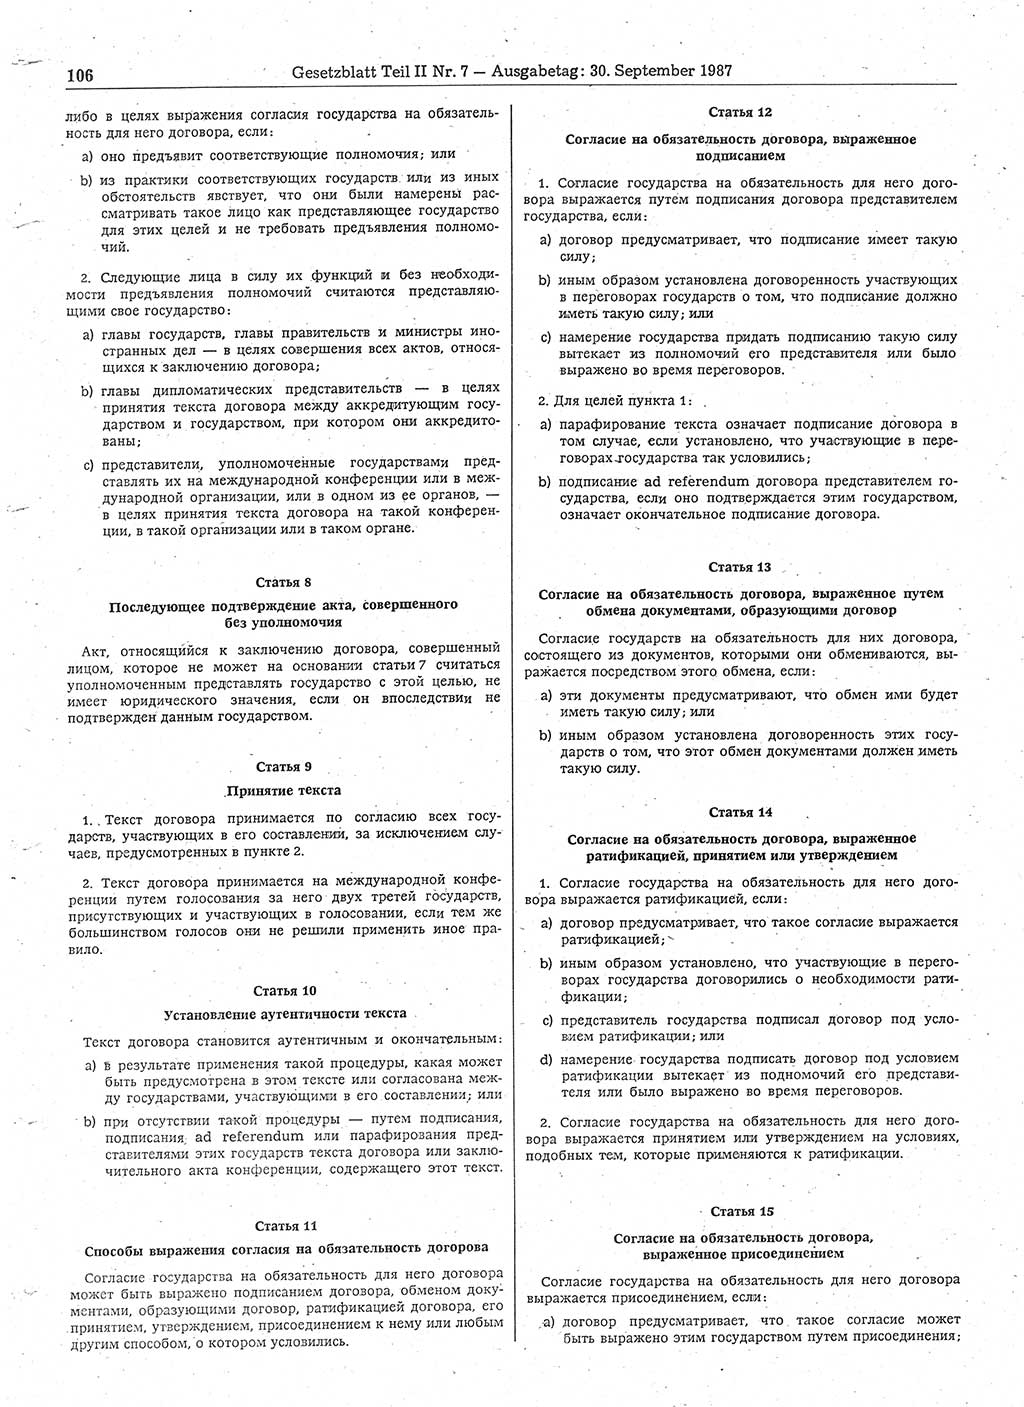 Gesetzblatt (GBl.) der Deutschen Demokratischen Republik (DDR) Teil ⅠⅠ 1987, Seite 106 (GBl. DDR ⅠⅠ 1987, S. 106)